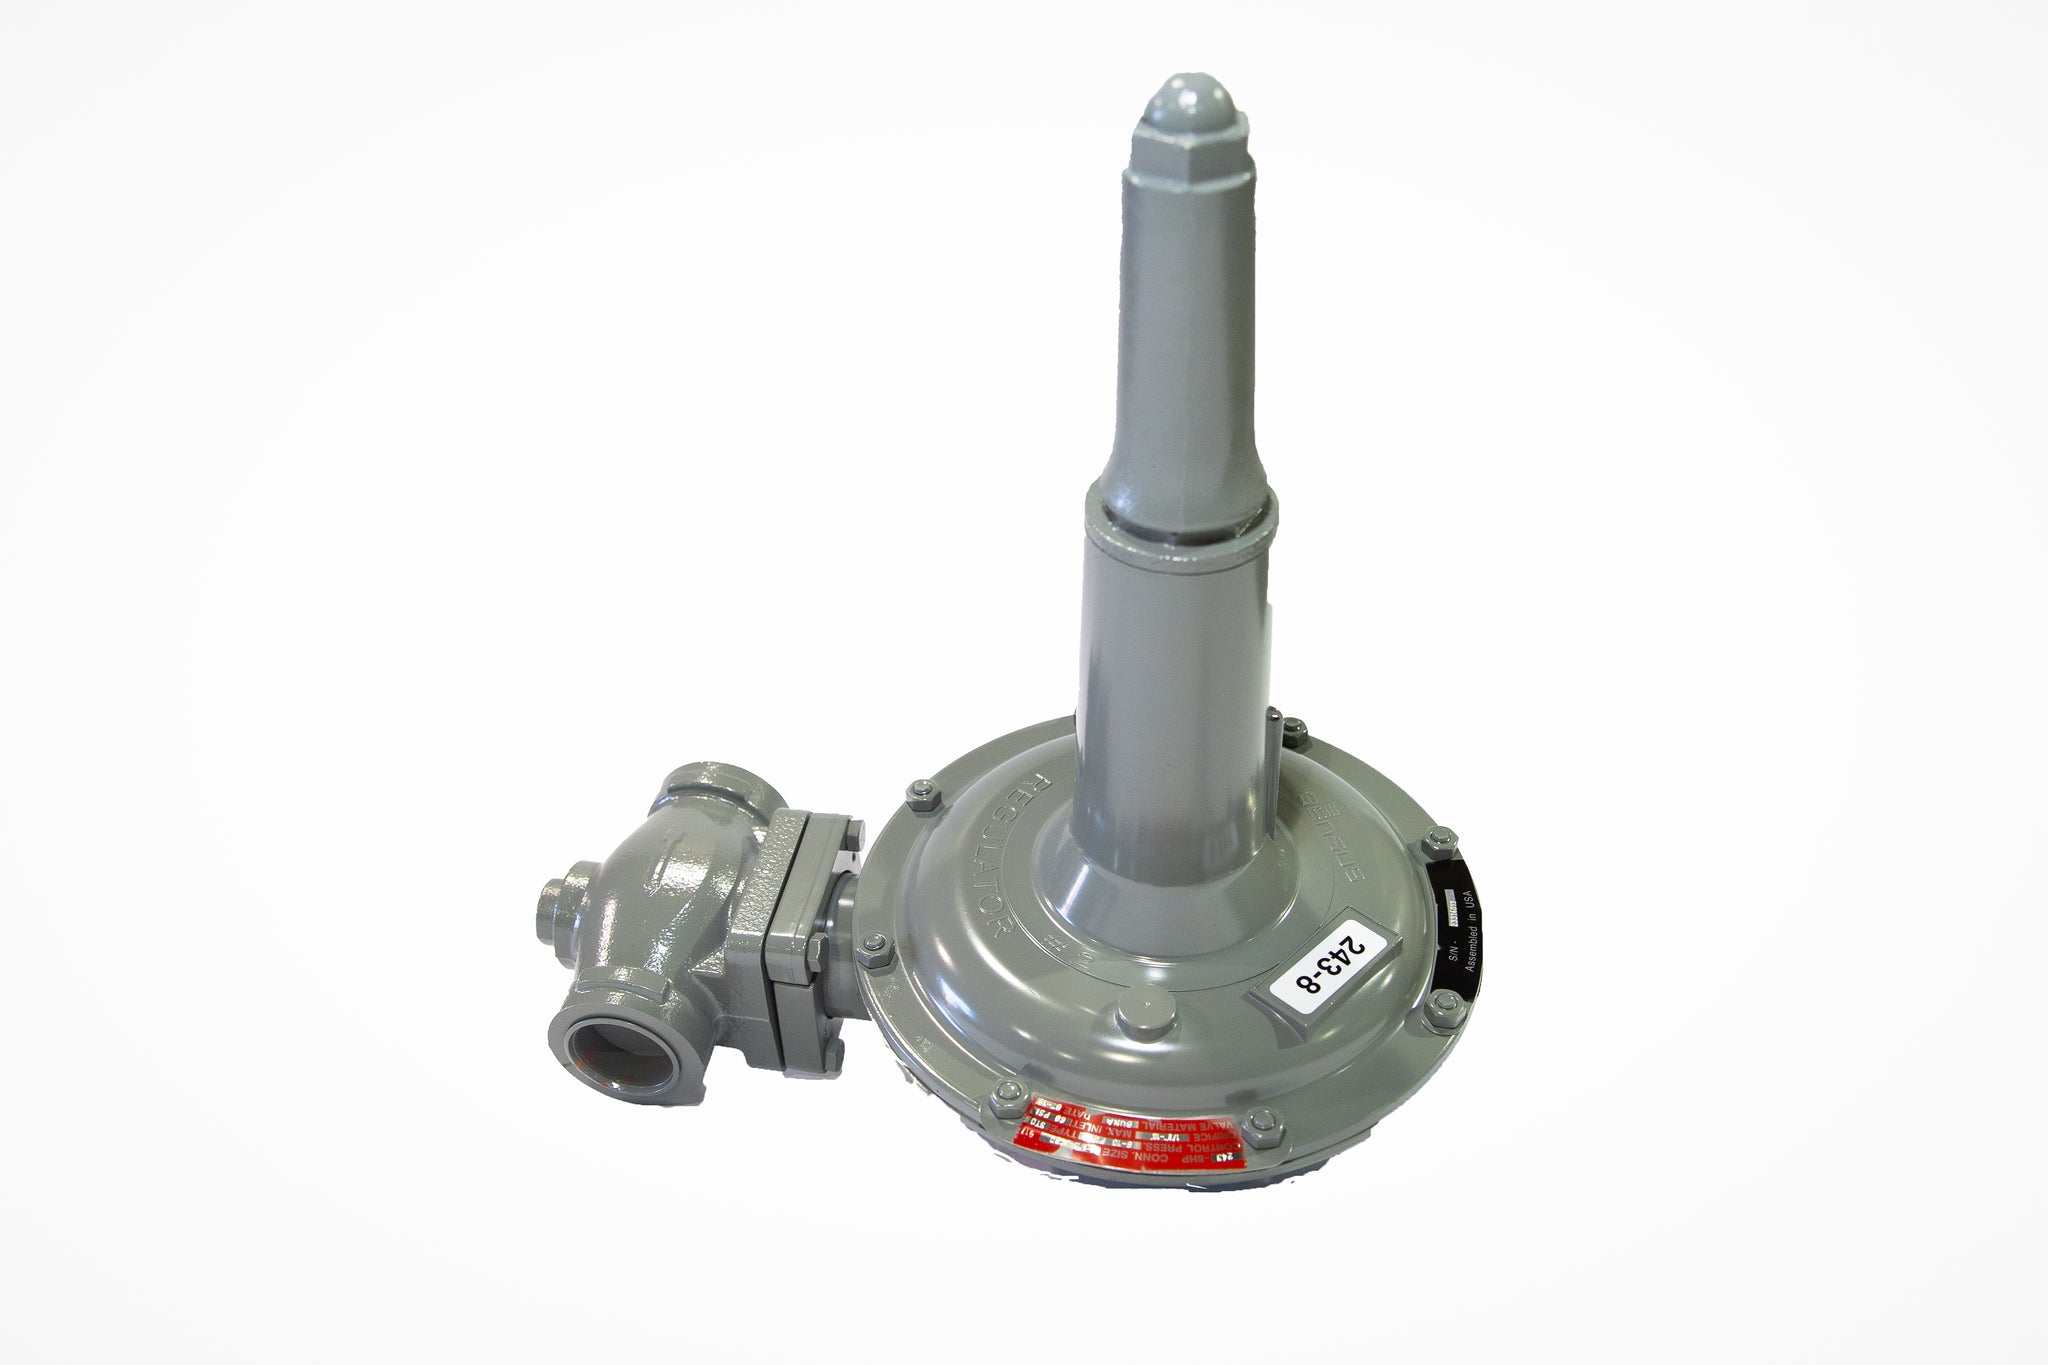 Sensus 243-8HP, 1-1/4"NPT gas regulator w/ 3/4" orifice, Cadmium spring(3-6.5 PSIG)